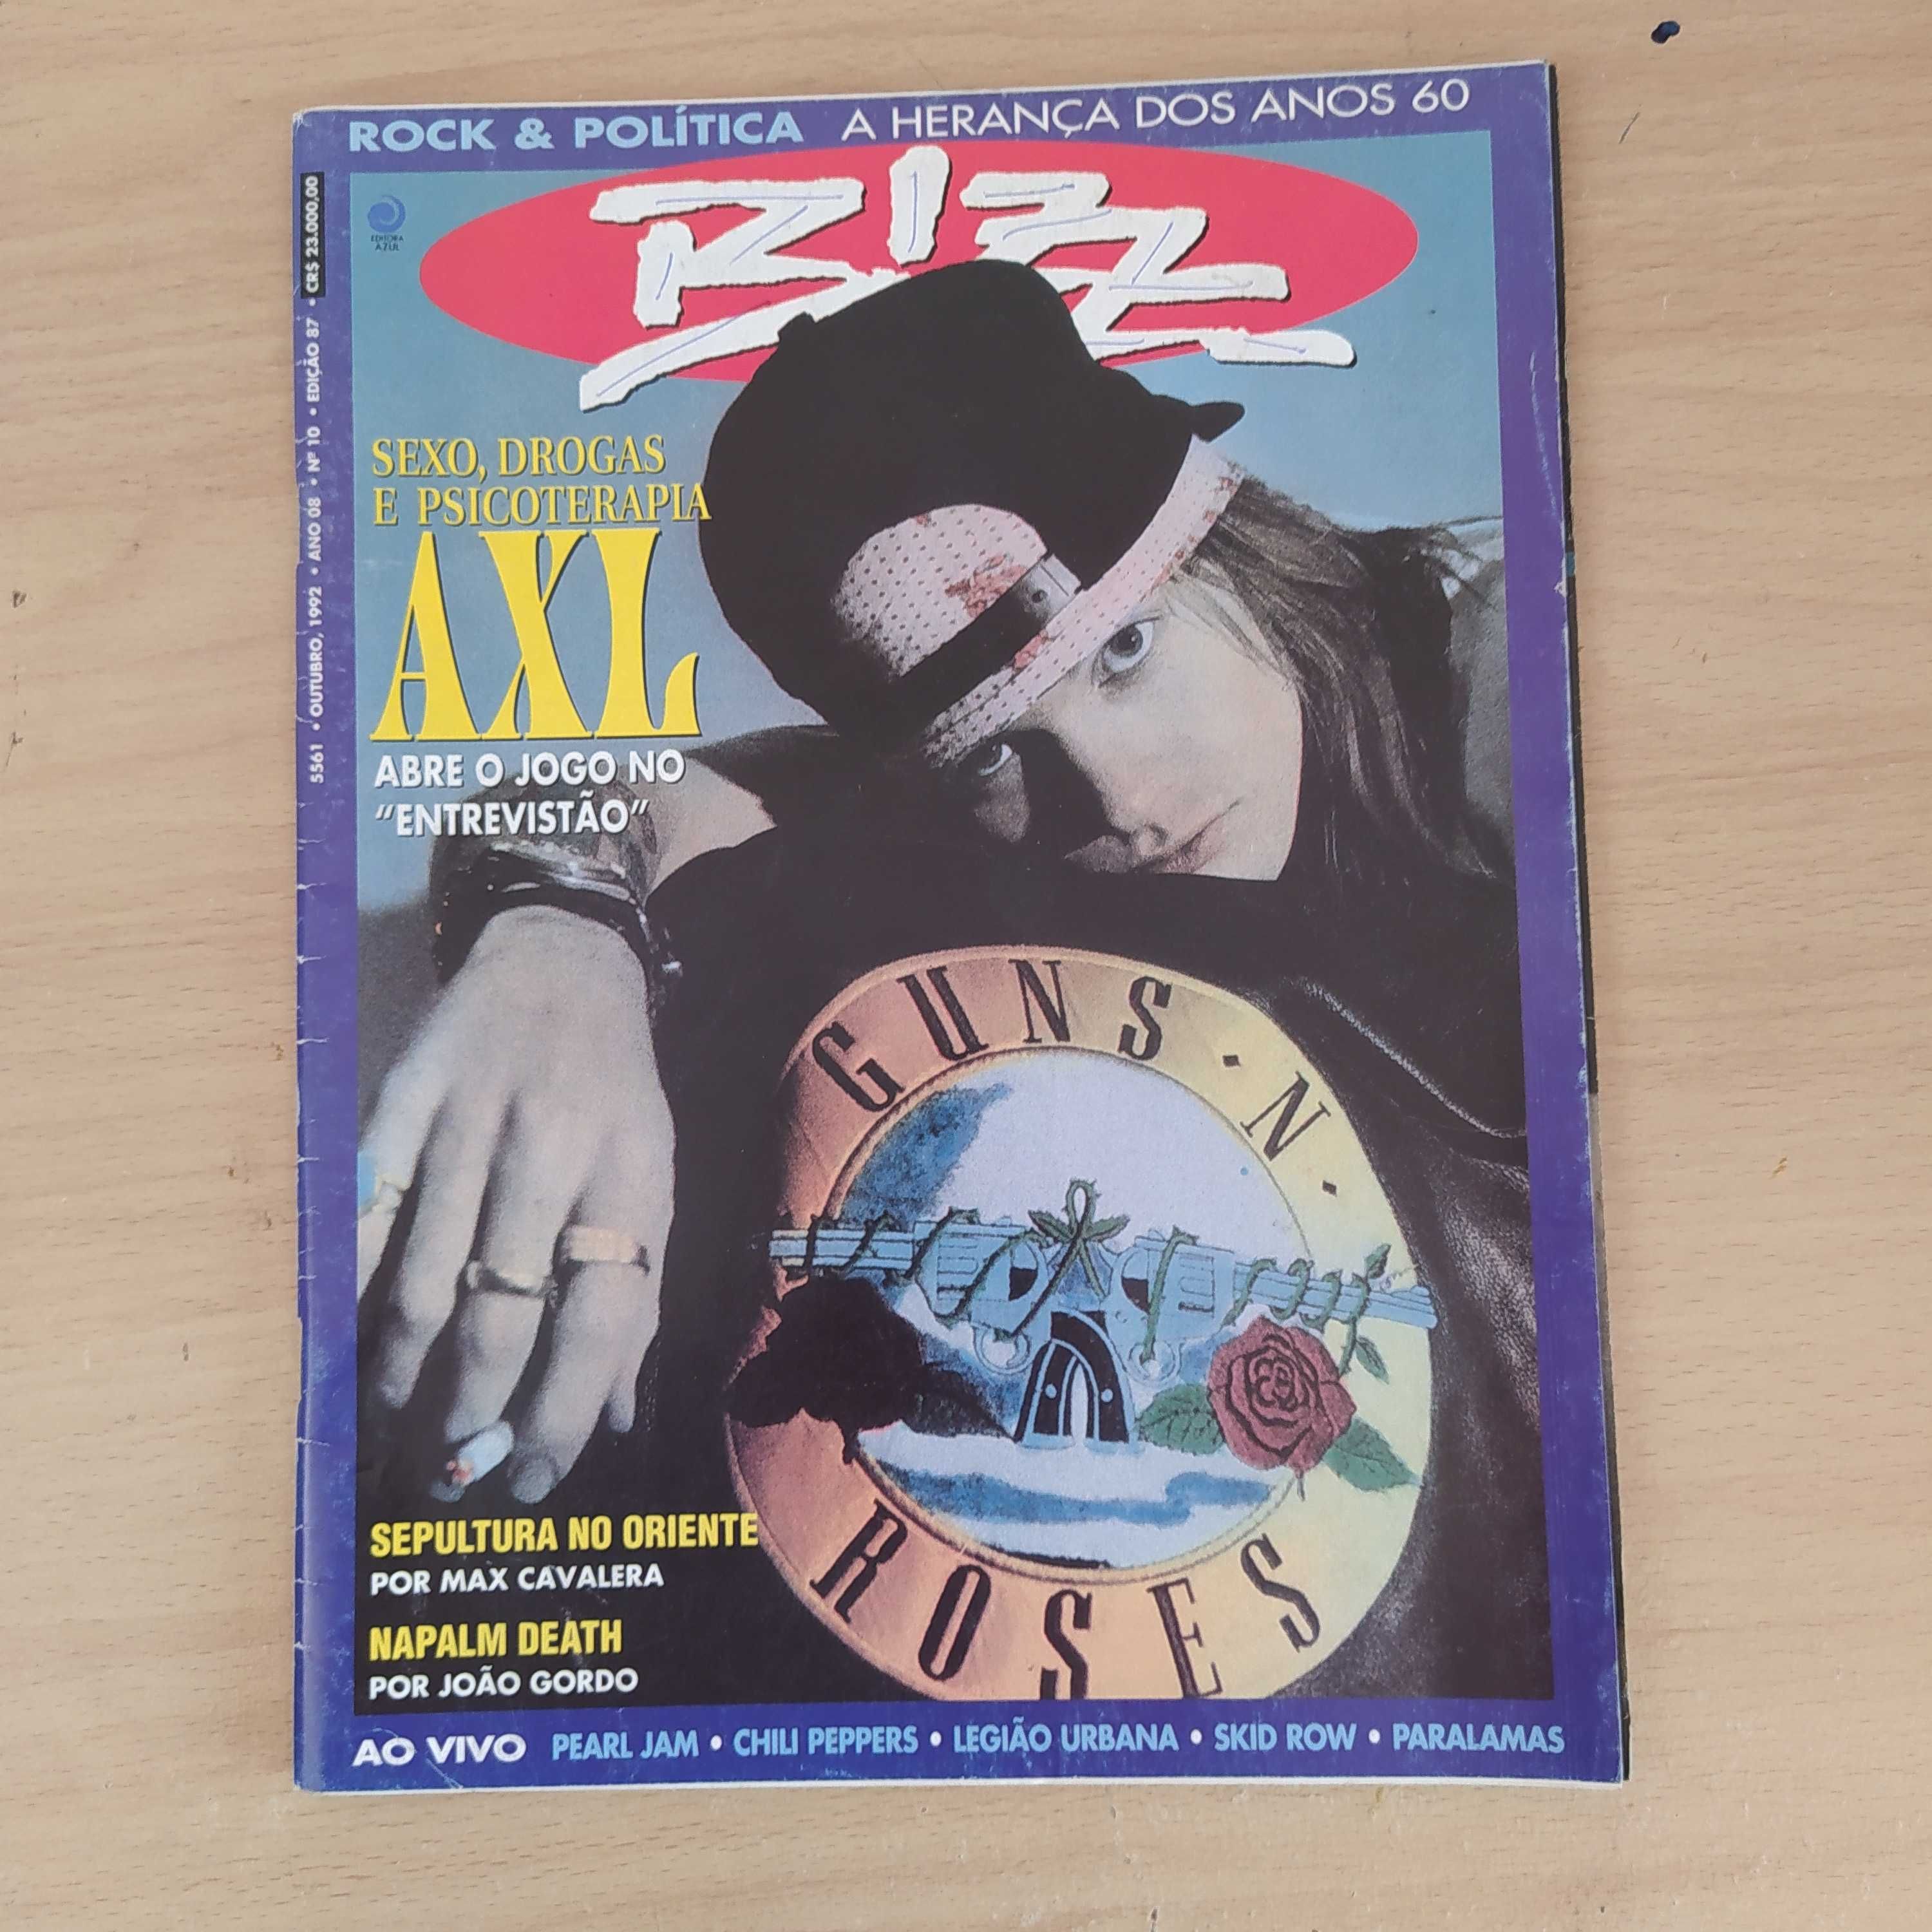 Lote revistas e jornal Blitz música década 90 Guns Mickael Jackson